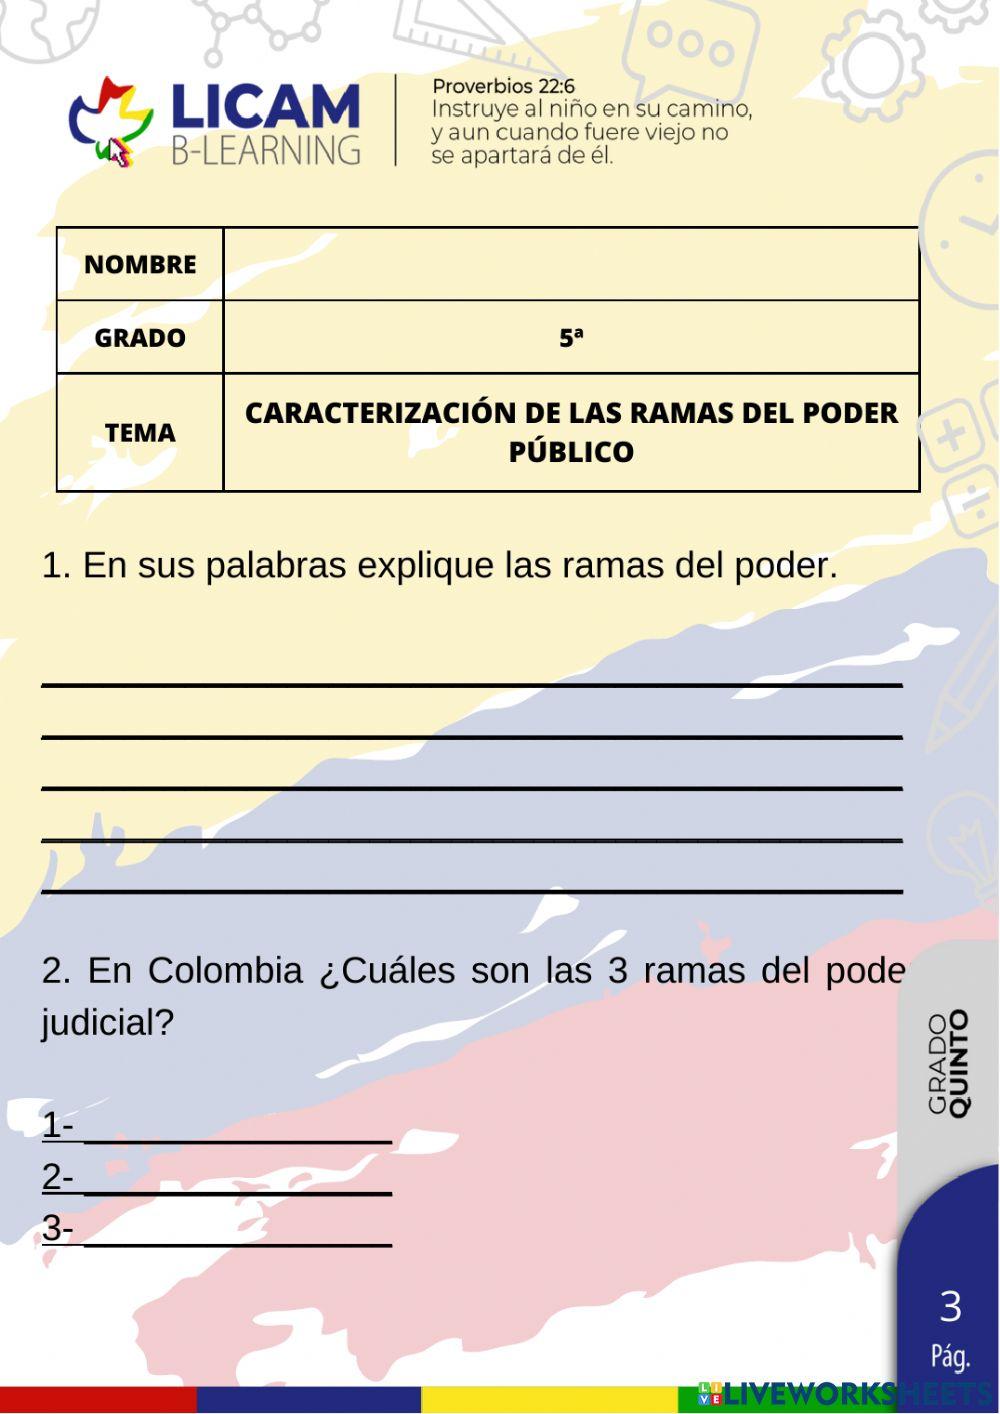 Caracterizaciòn de las ramas del poder publico de colombia